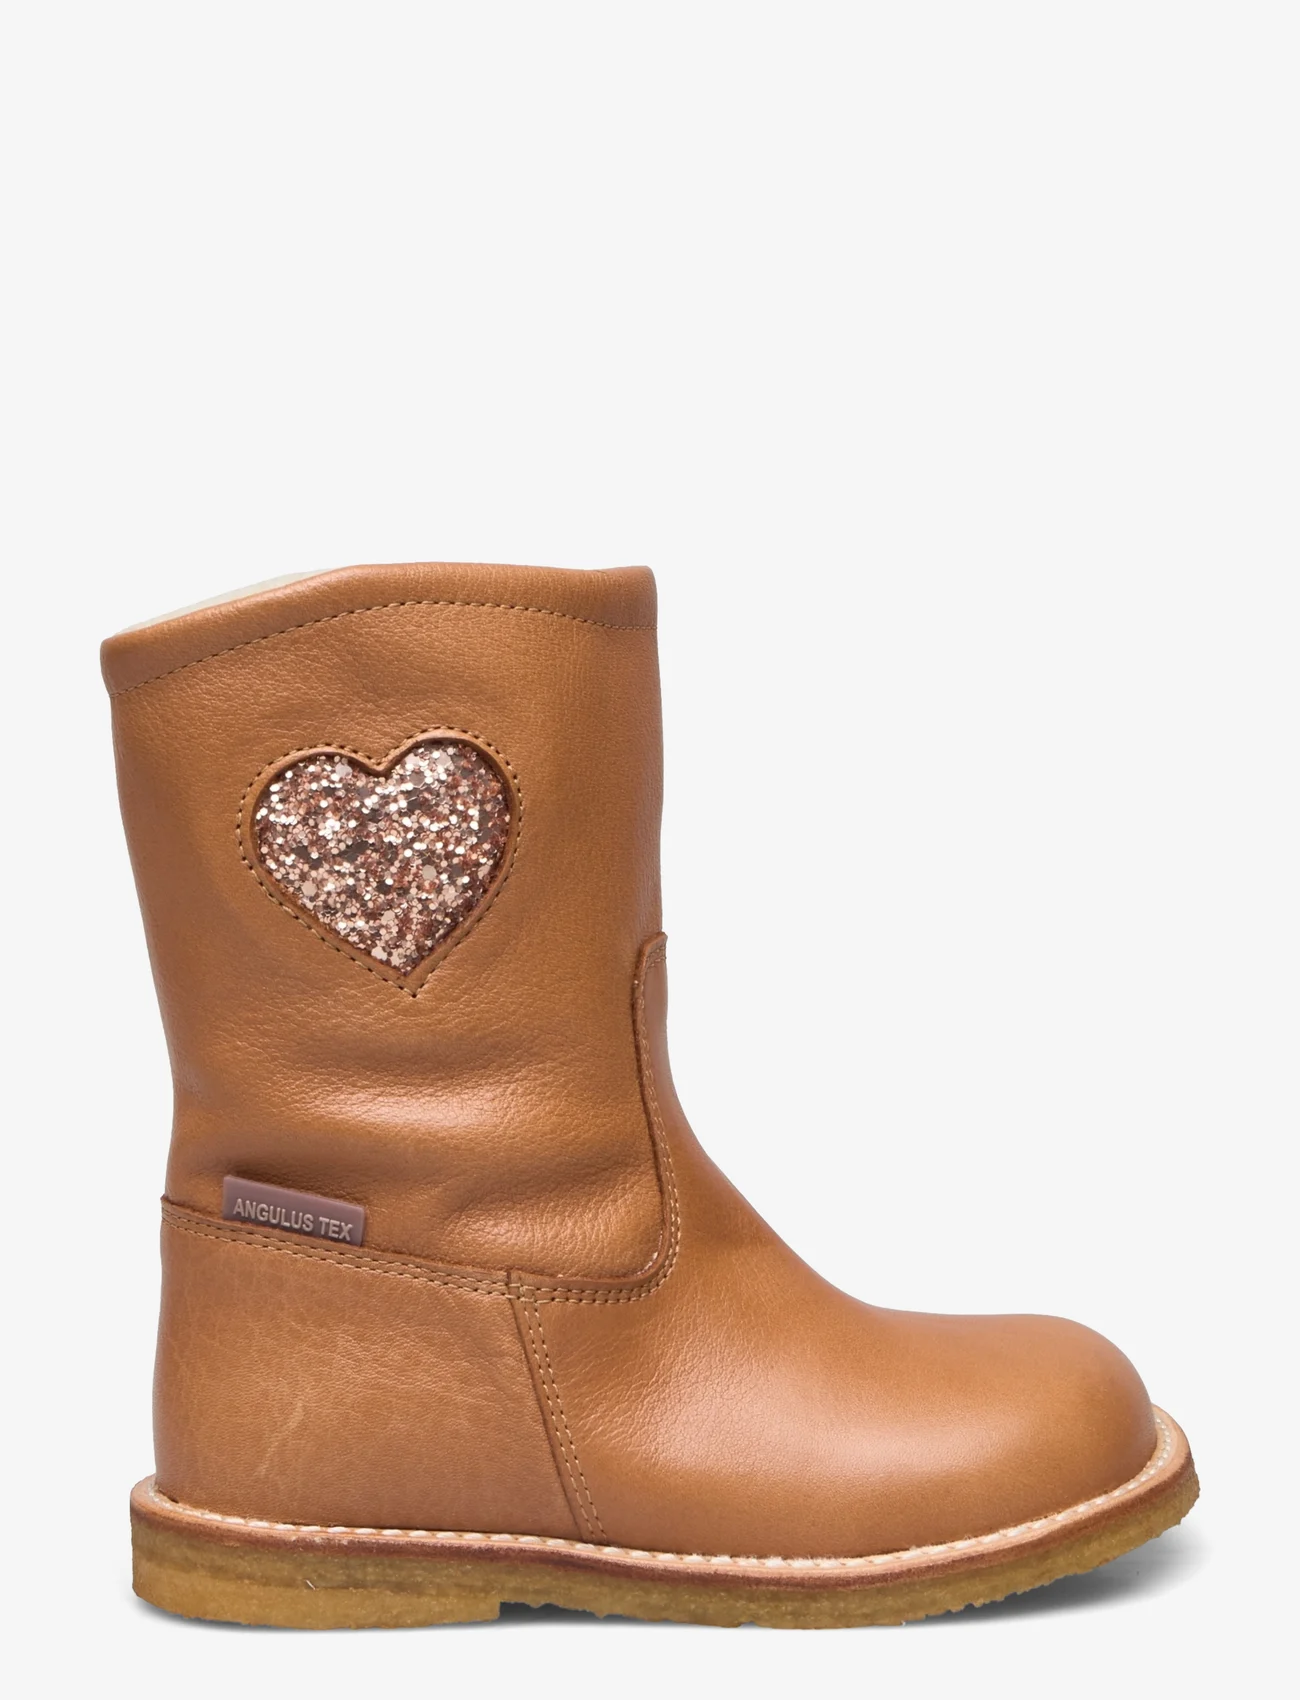 ANGULUS - Boots - flat - with zipper - bērniem - 1732/1708 almond/maple glitter - 1